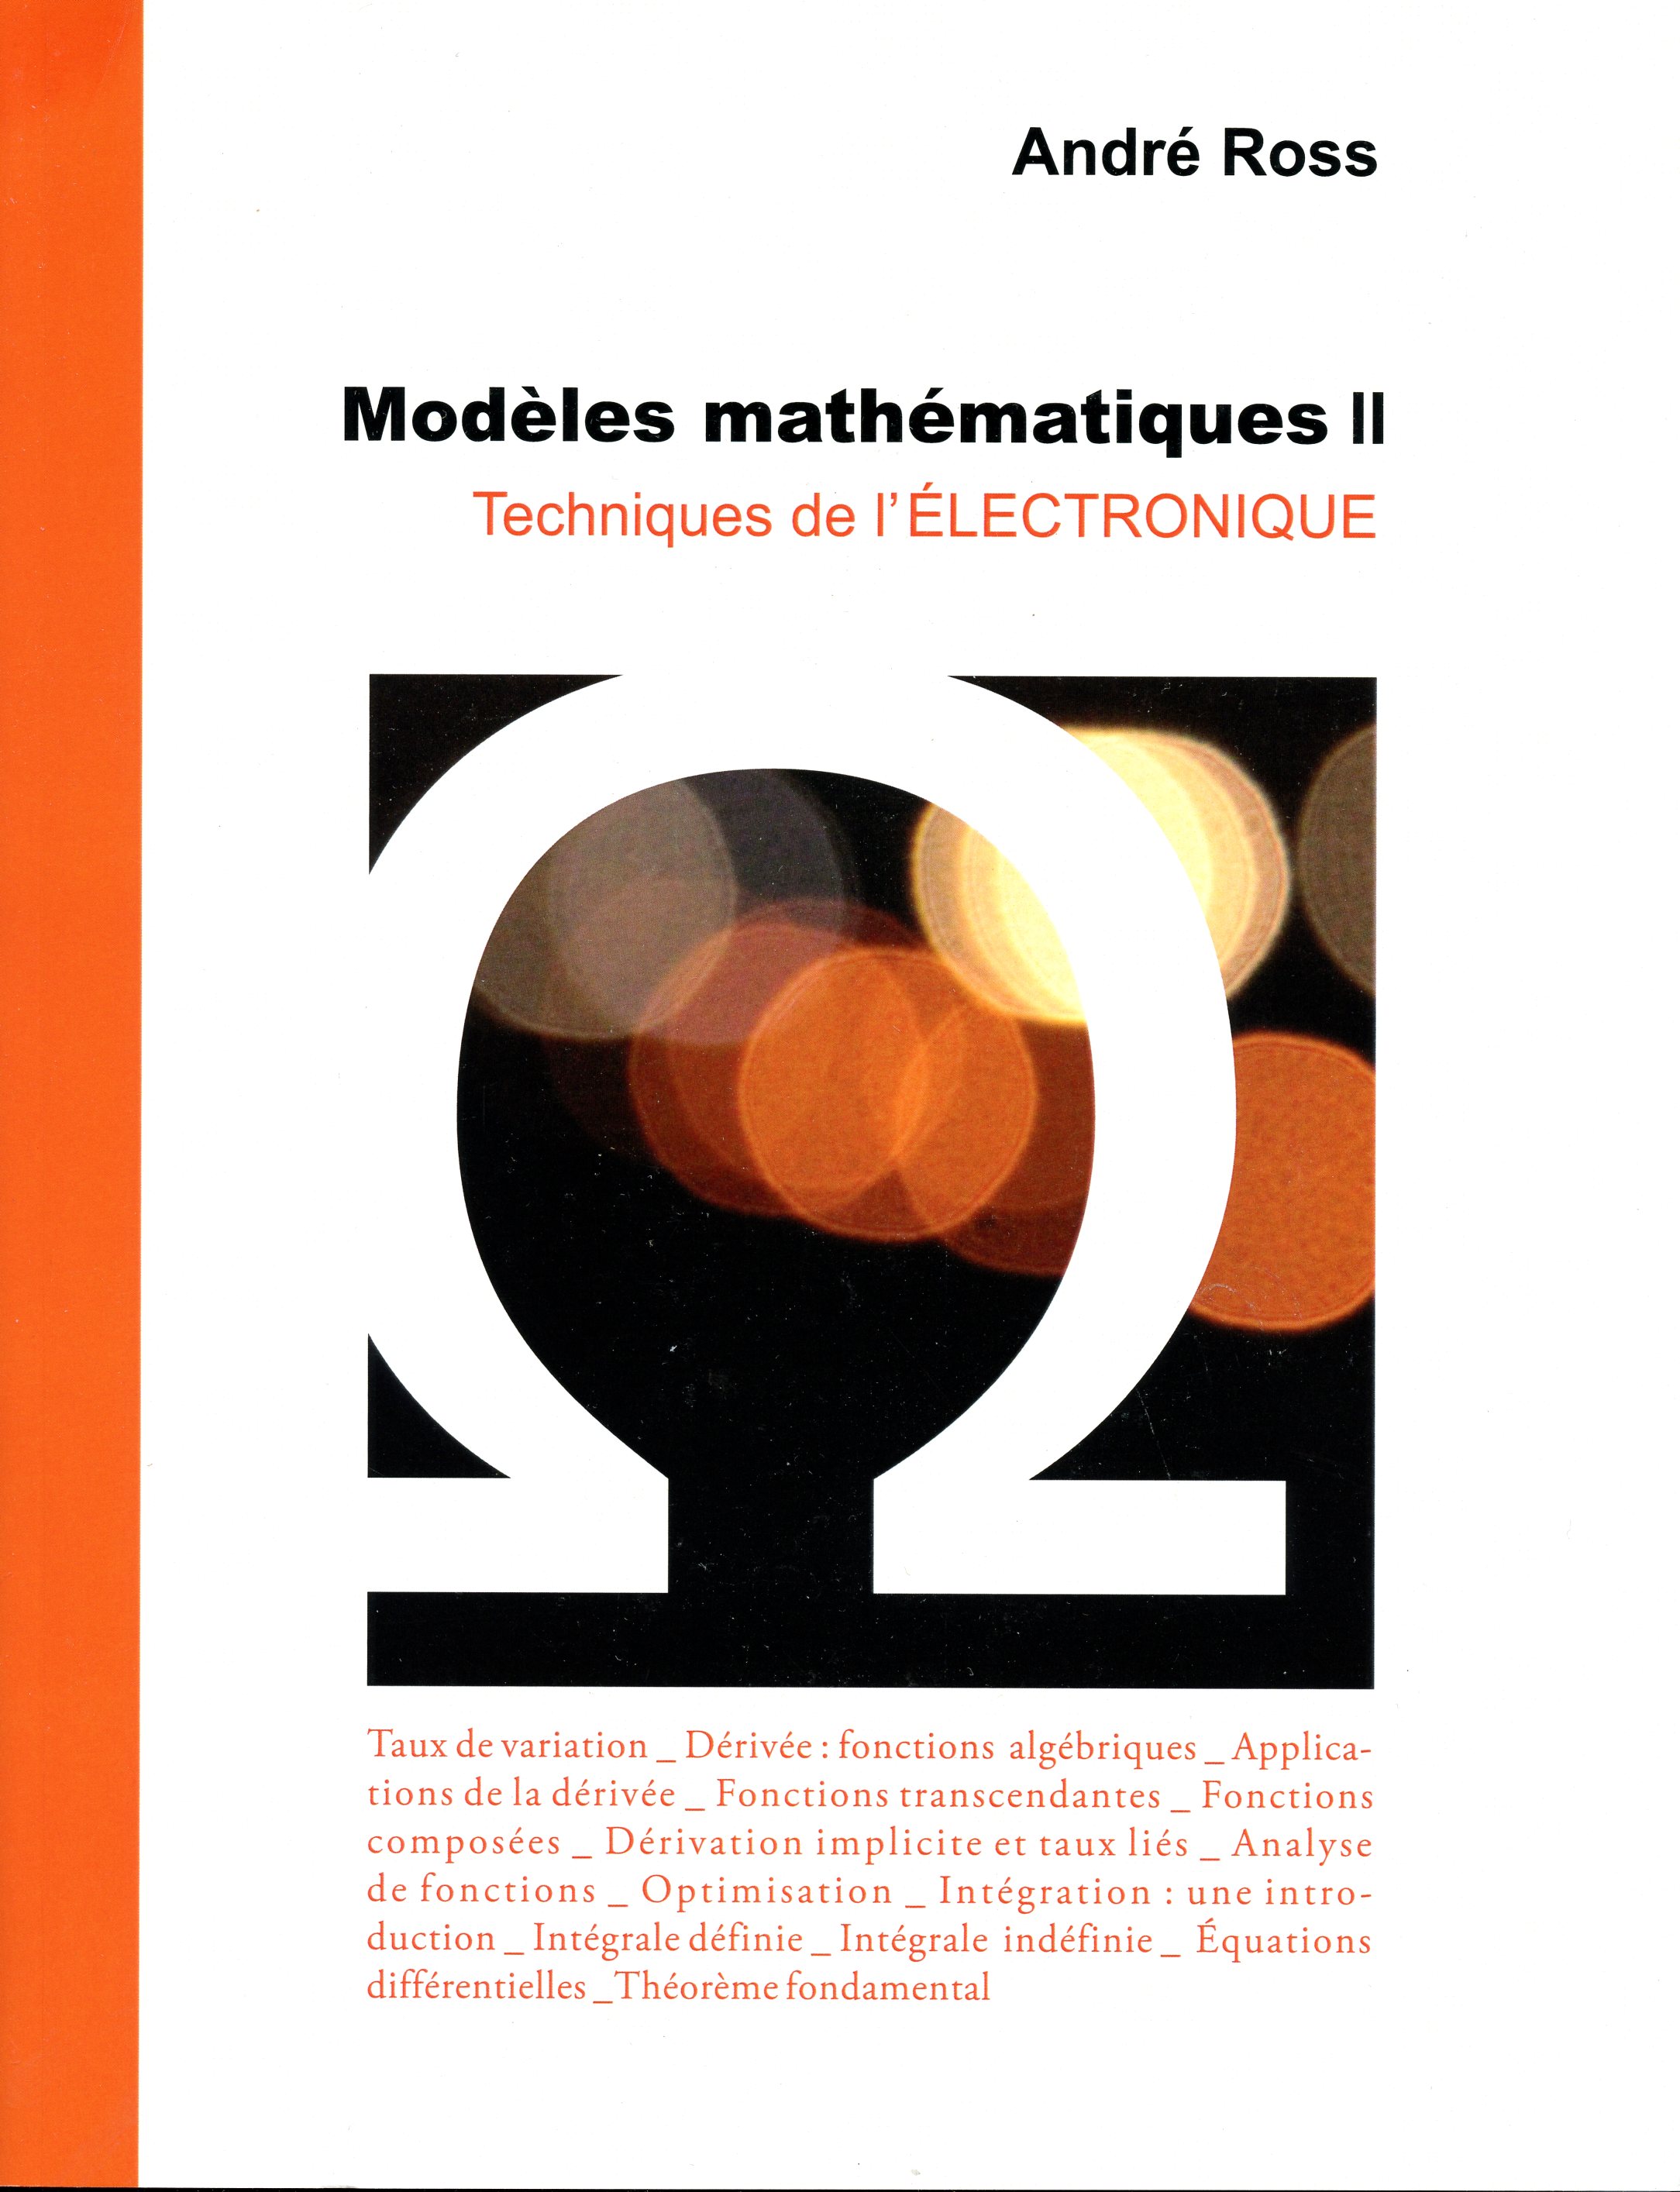 Modèles mathématiques 2, Techniques de l’électronique